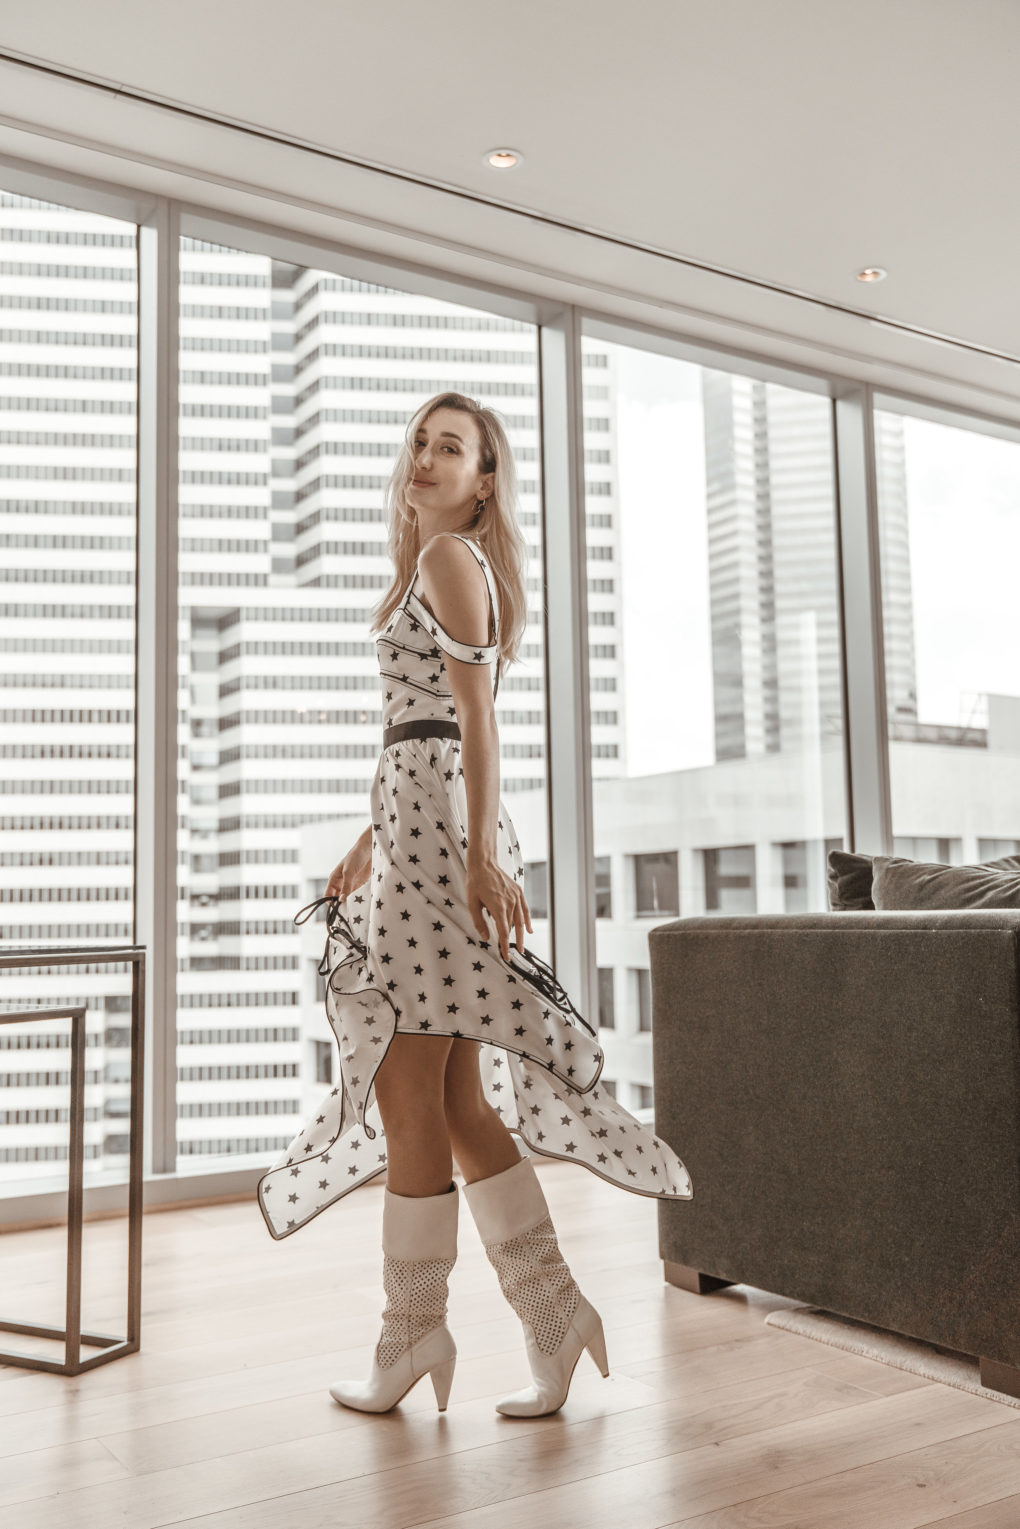 About Chiara, Houston Fashion Blogger